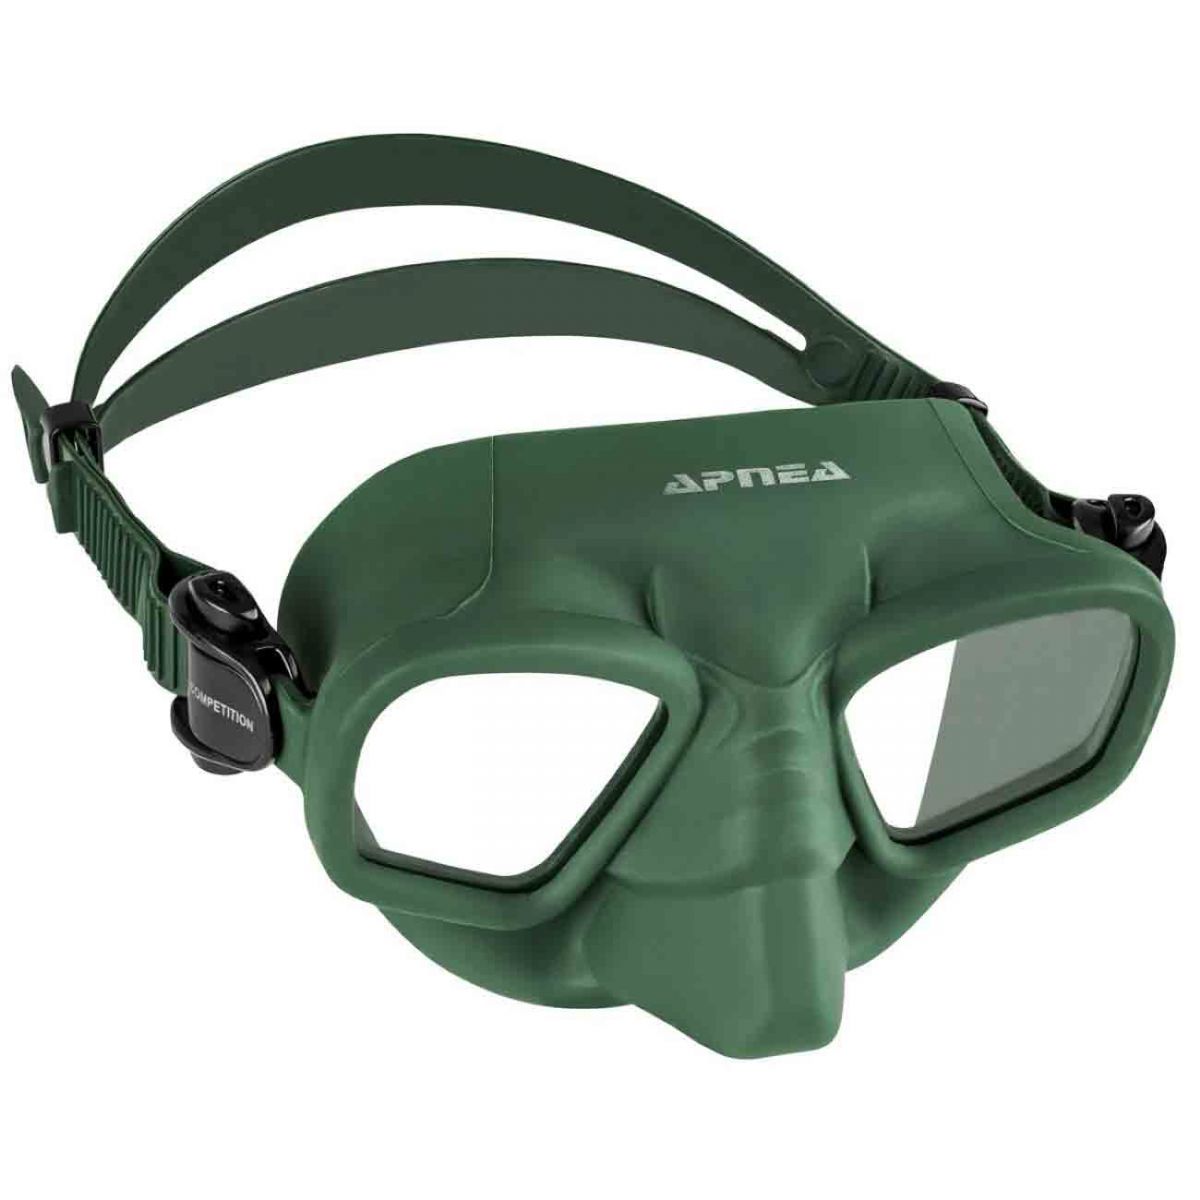 Apnea Competition Koyu Yeşil Dalış Gözlüğü,Apnea kalitesinde koyu yeşil uzun yıllar kullanabileceğiniz dalış maskesi